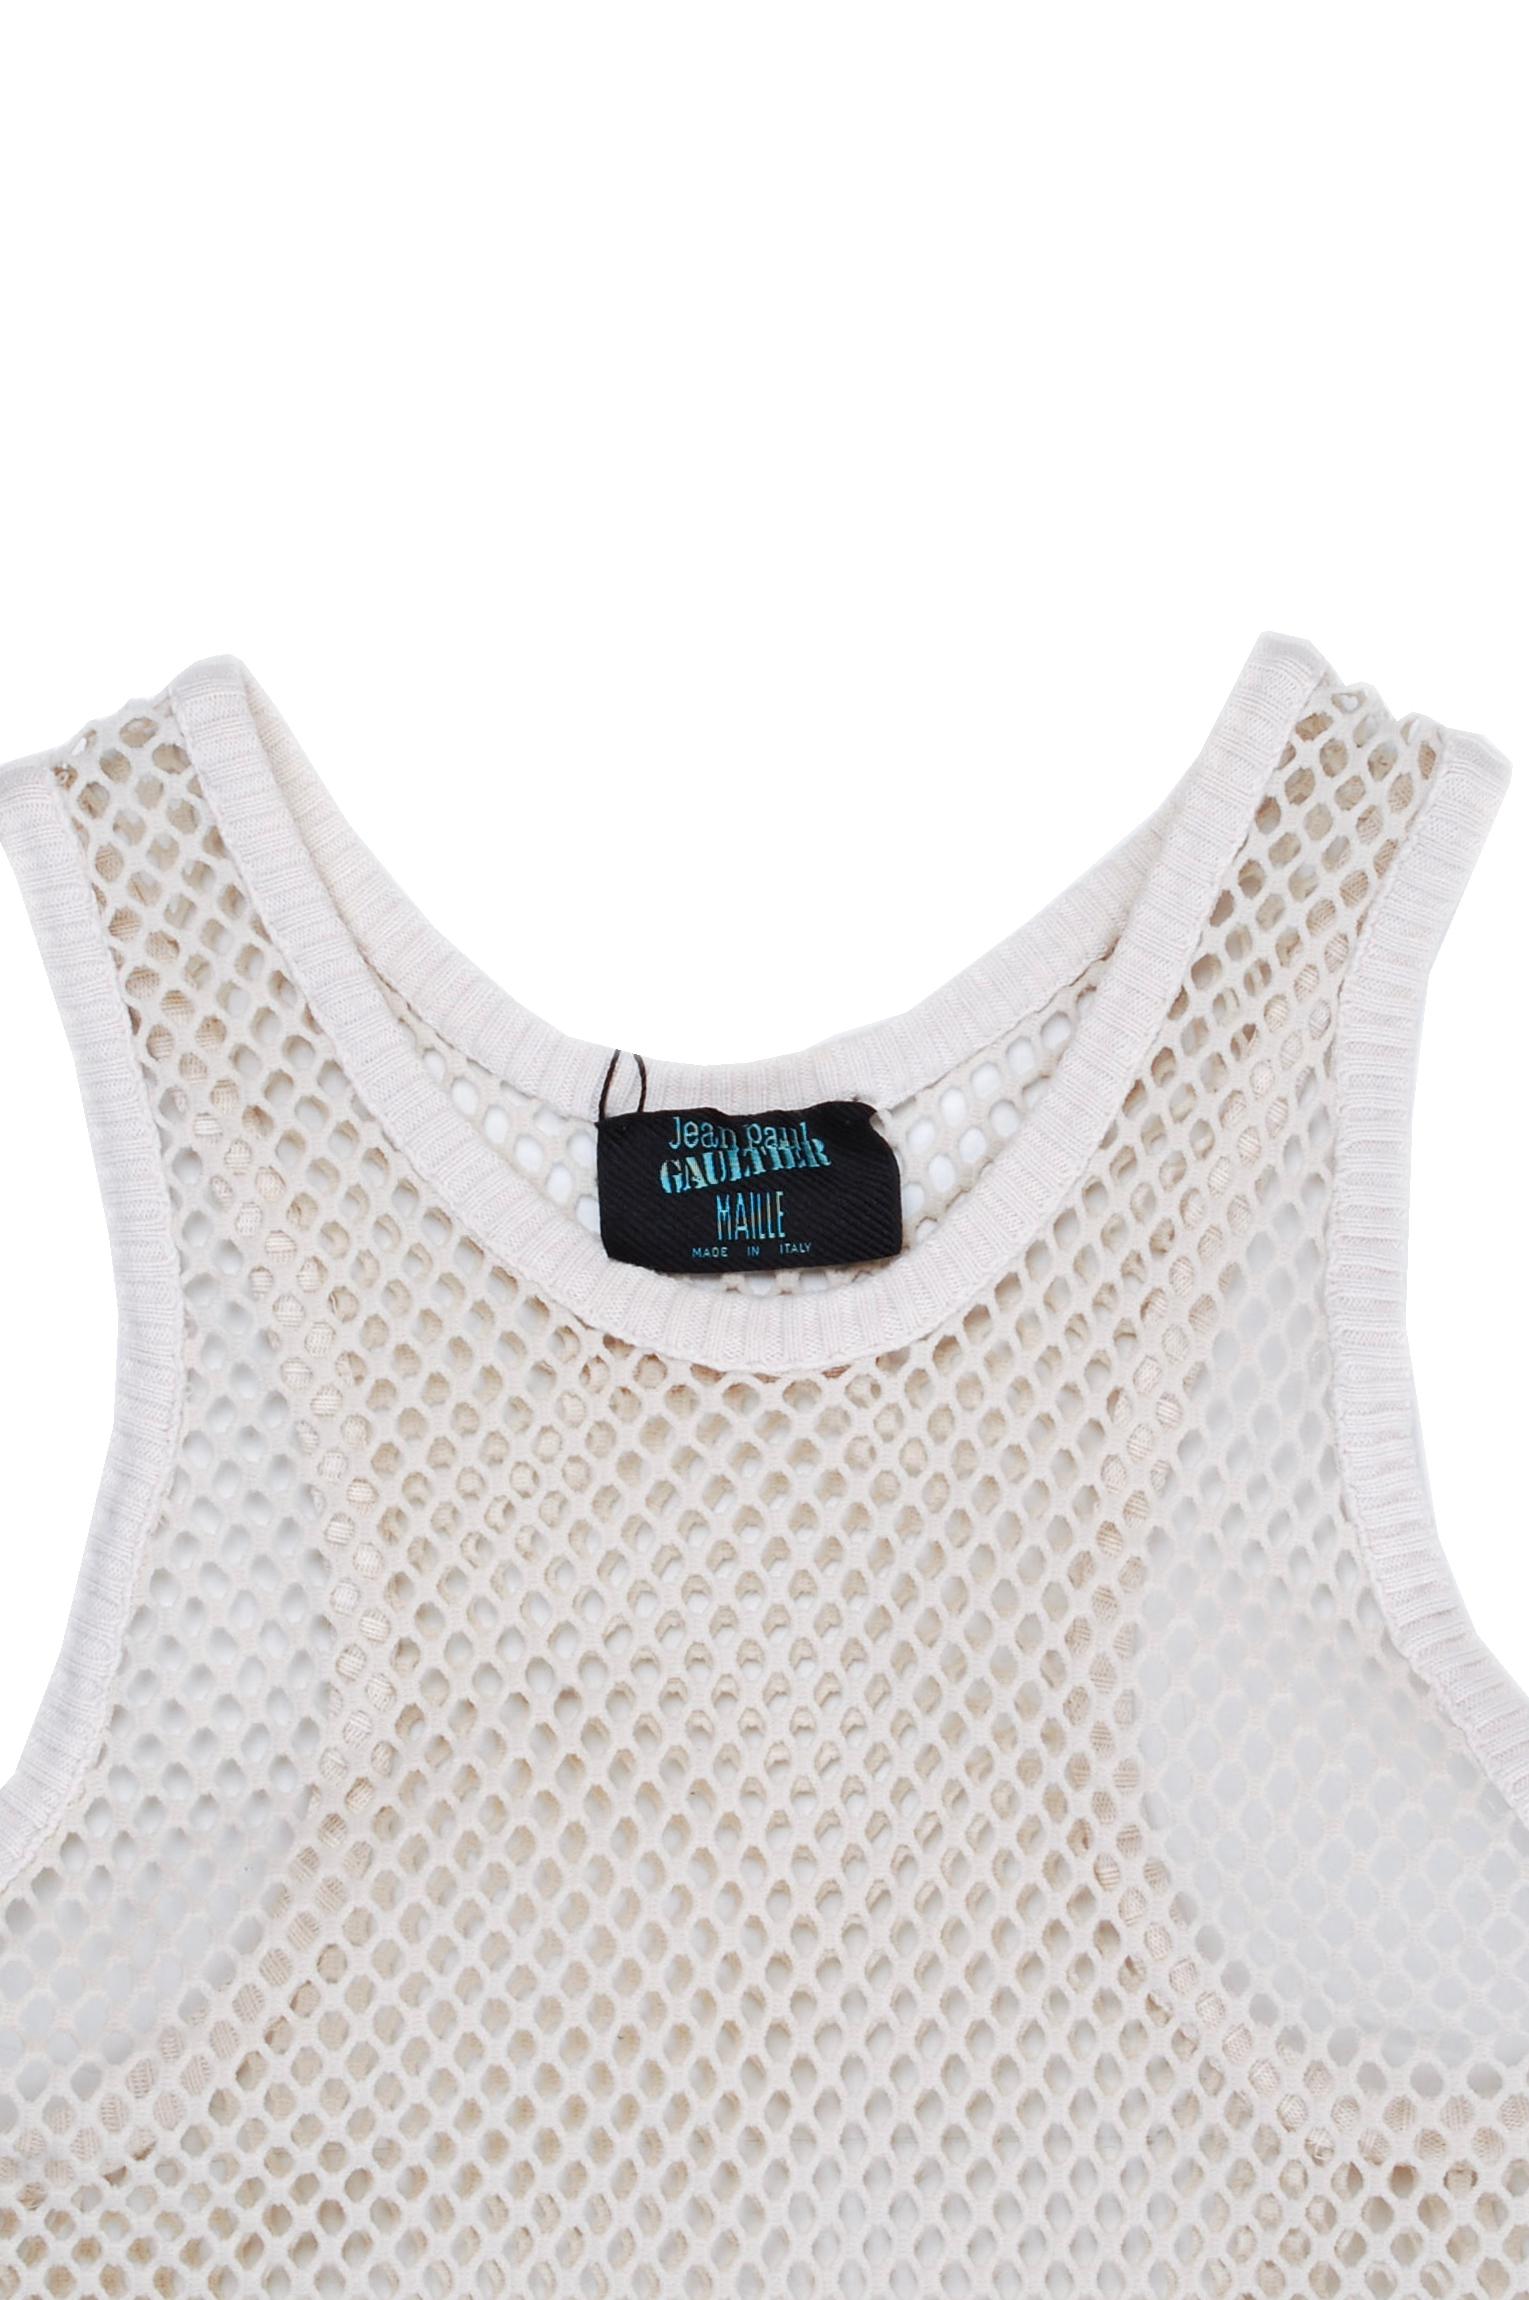 Zum Verkauf steht ein 100% echtes Jean Paul Gaultier Mesh Top Herren T-Shirt 
Farbe: Creme
(Eine tatsächliche Farbe kann ein wenig variieren aufgrund individueller Computer-Bildschirm Interpretation)
MATERIAL: Kein Etikett, scheint